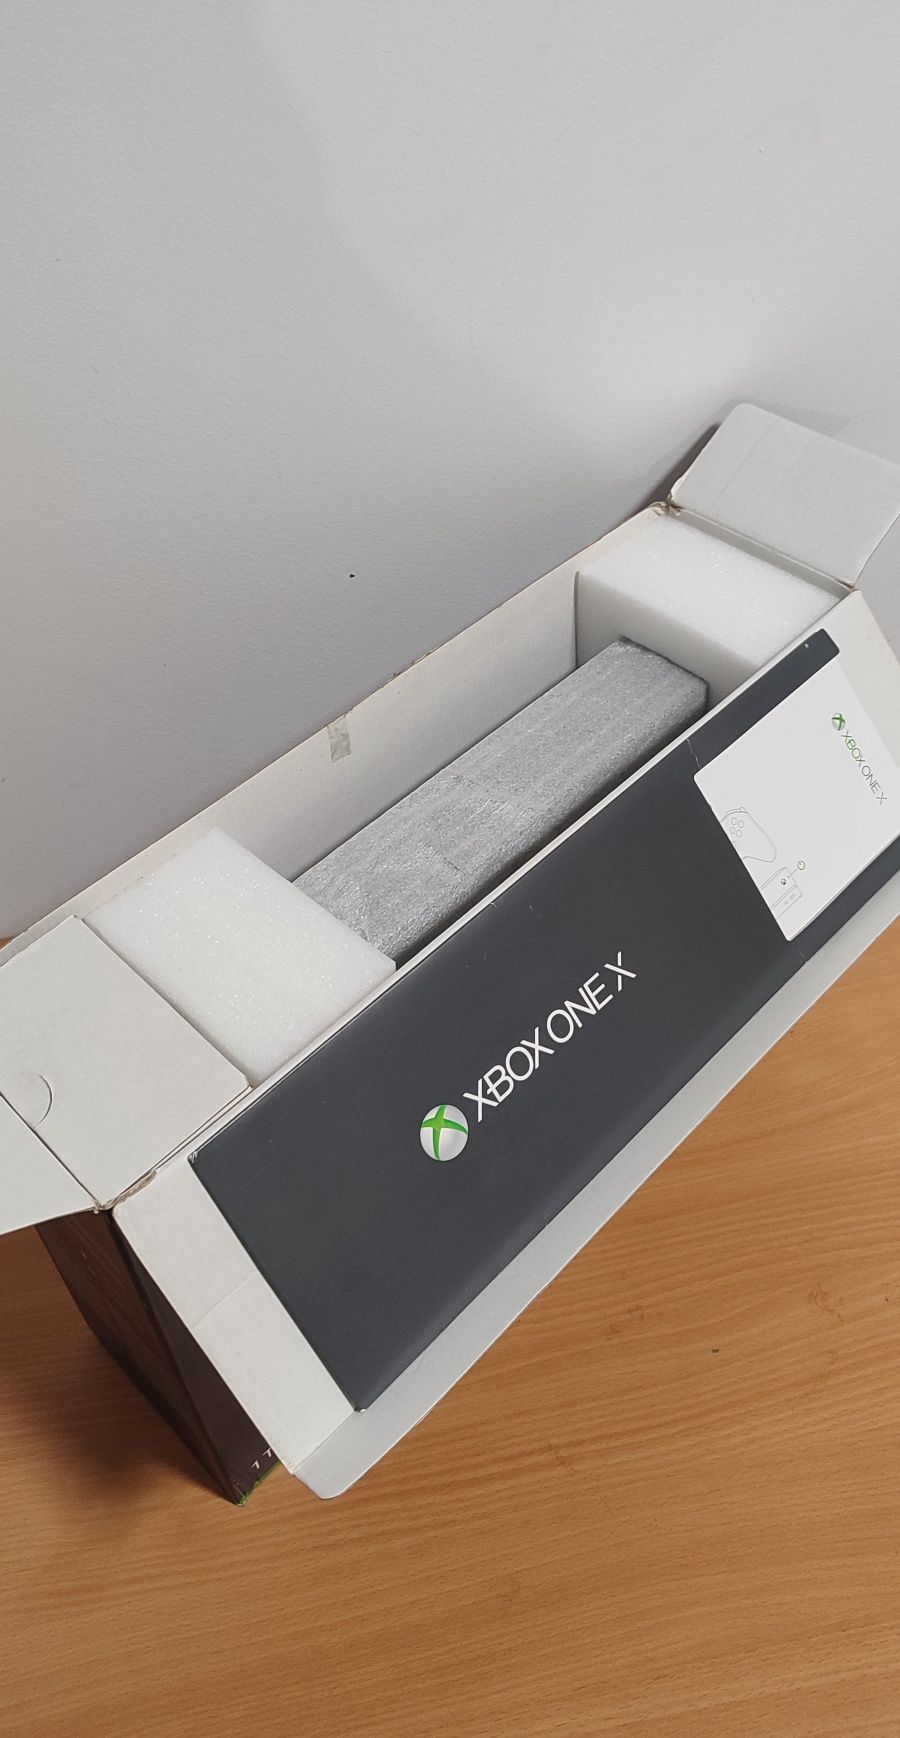 Xbox One X   1Tb